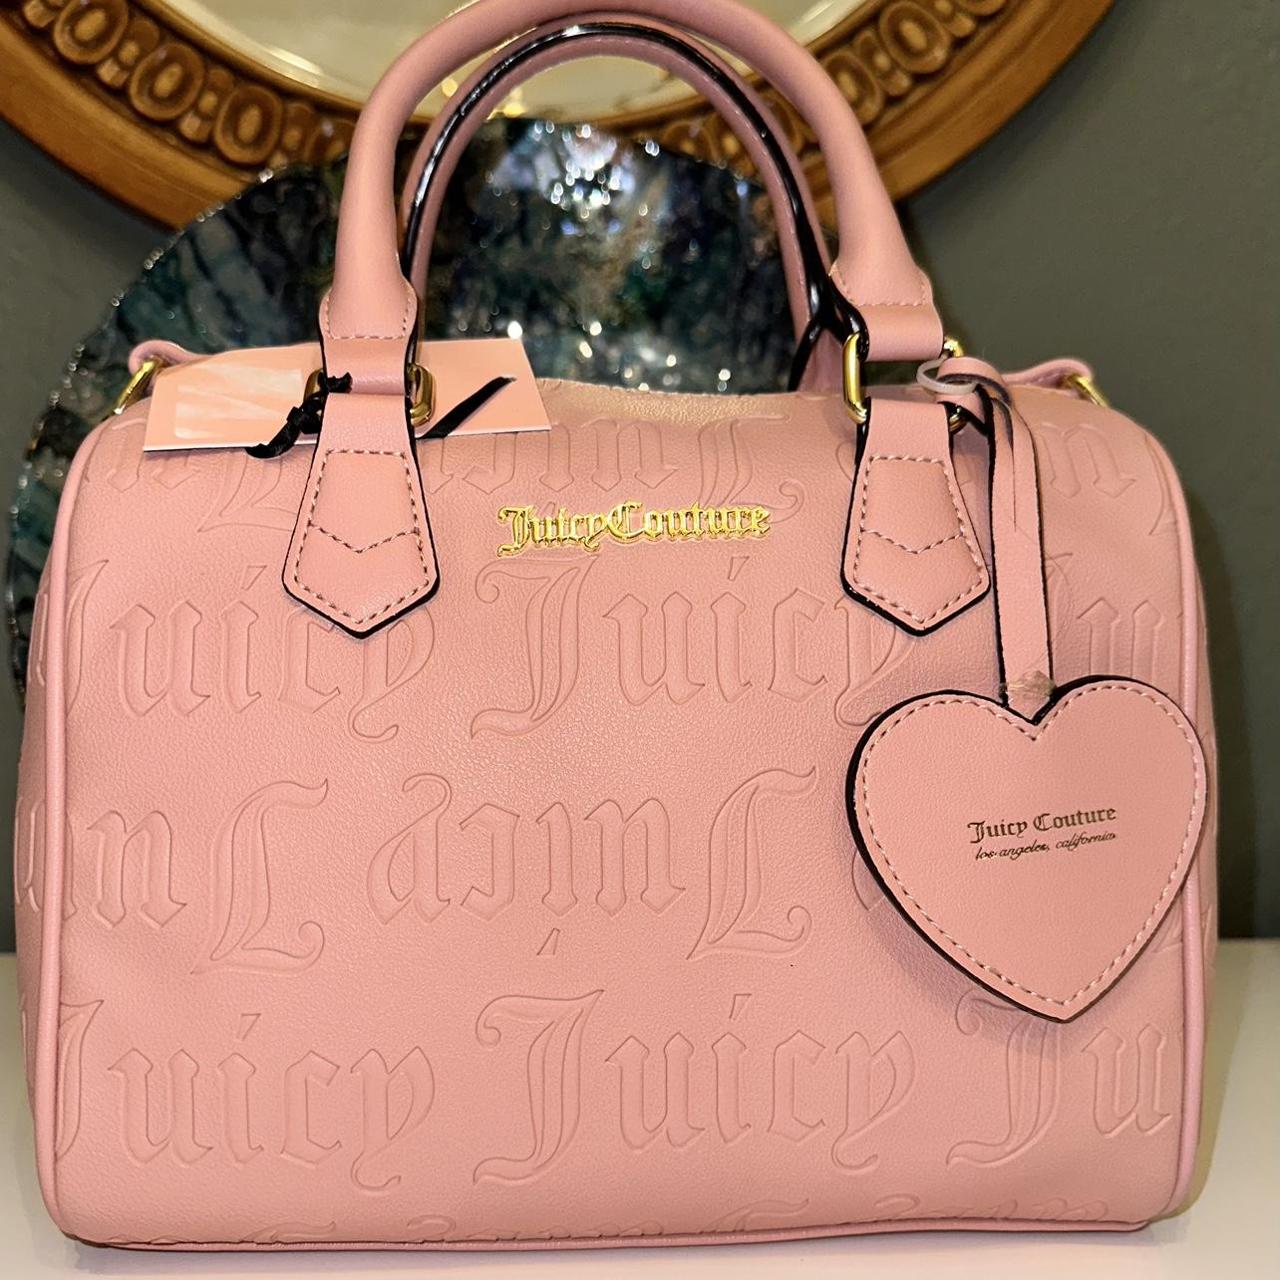 juicy couture speedy satchel pink